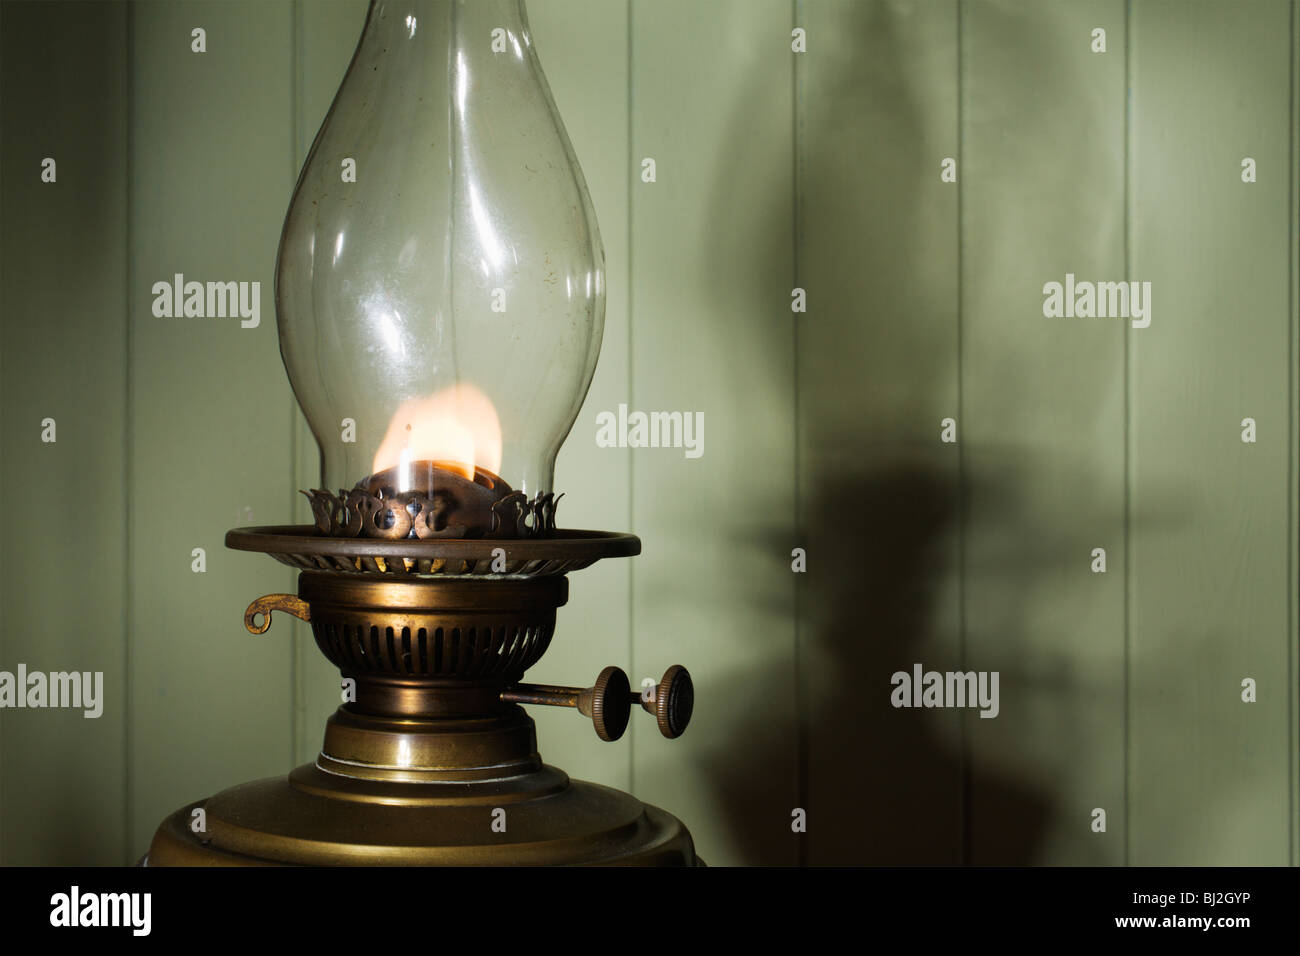 Lampada a petrolio immagini e fotografie stock ad alta risoluzione - Alamy